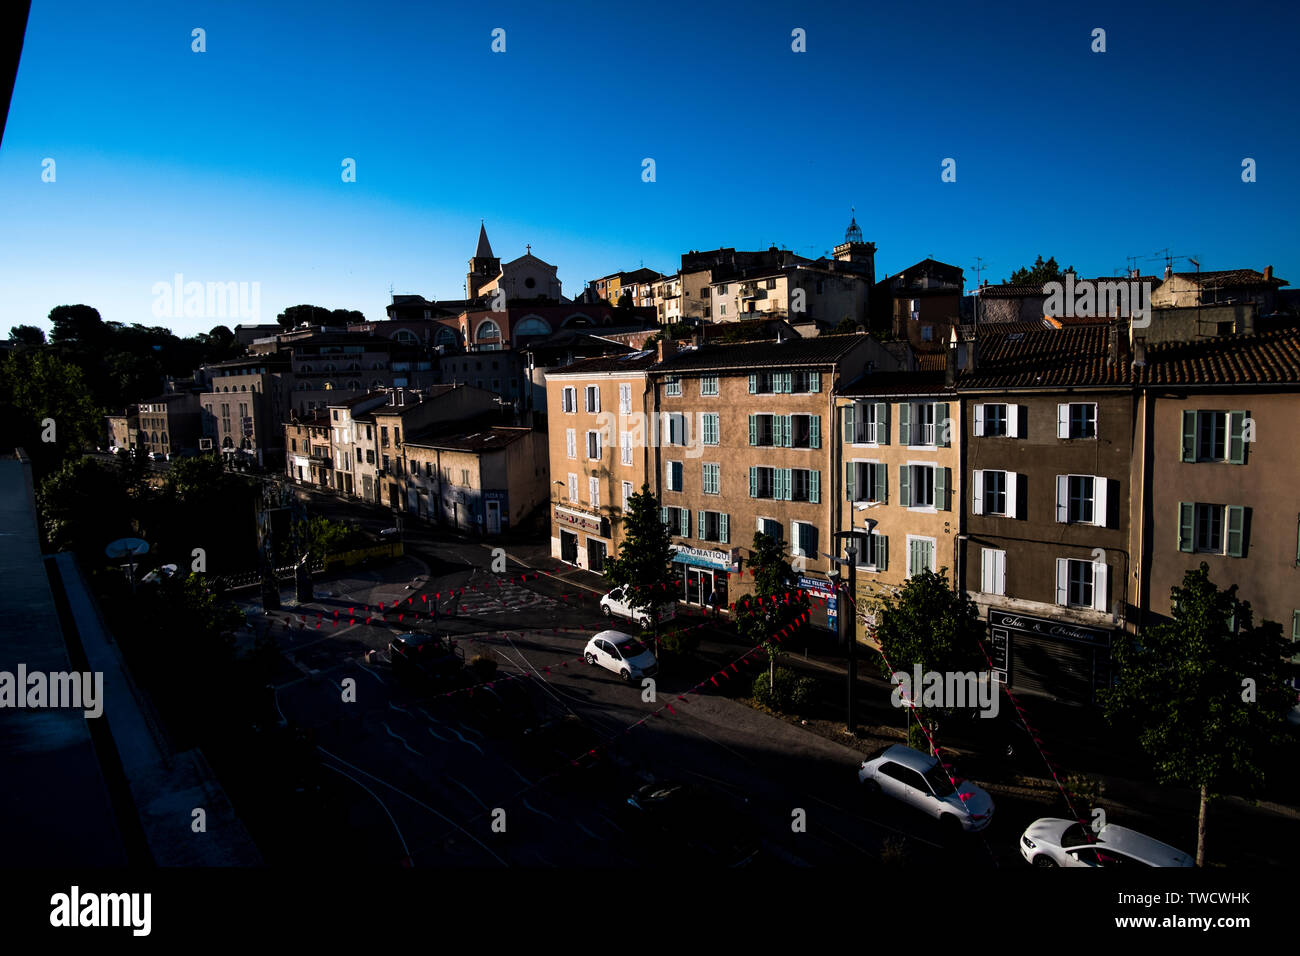 Ein Blick auf die Gebäude in der Innenstadt von Aubagne, Frankreich Stockfoto